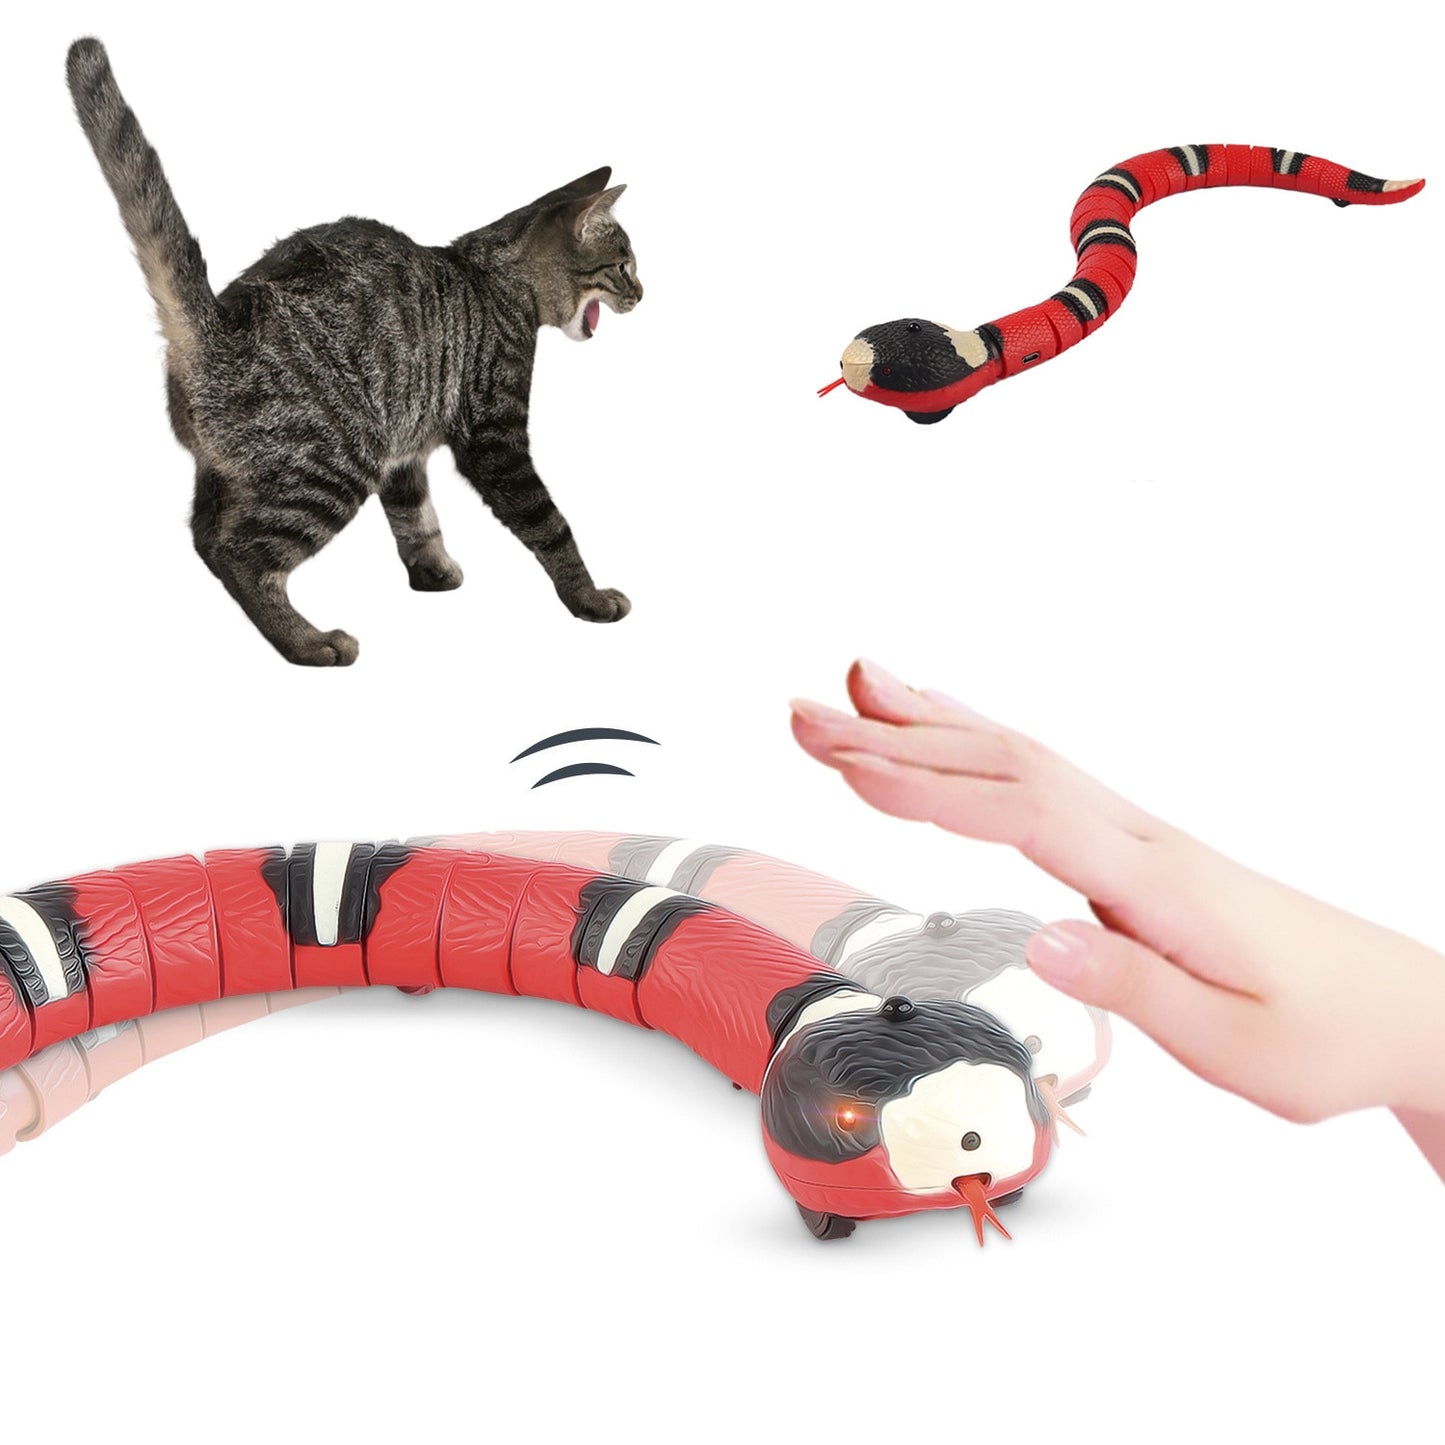 Automatic Snake Cat toy - Nekoby Automatic Snake Cat toy